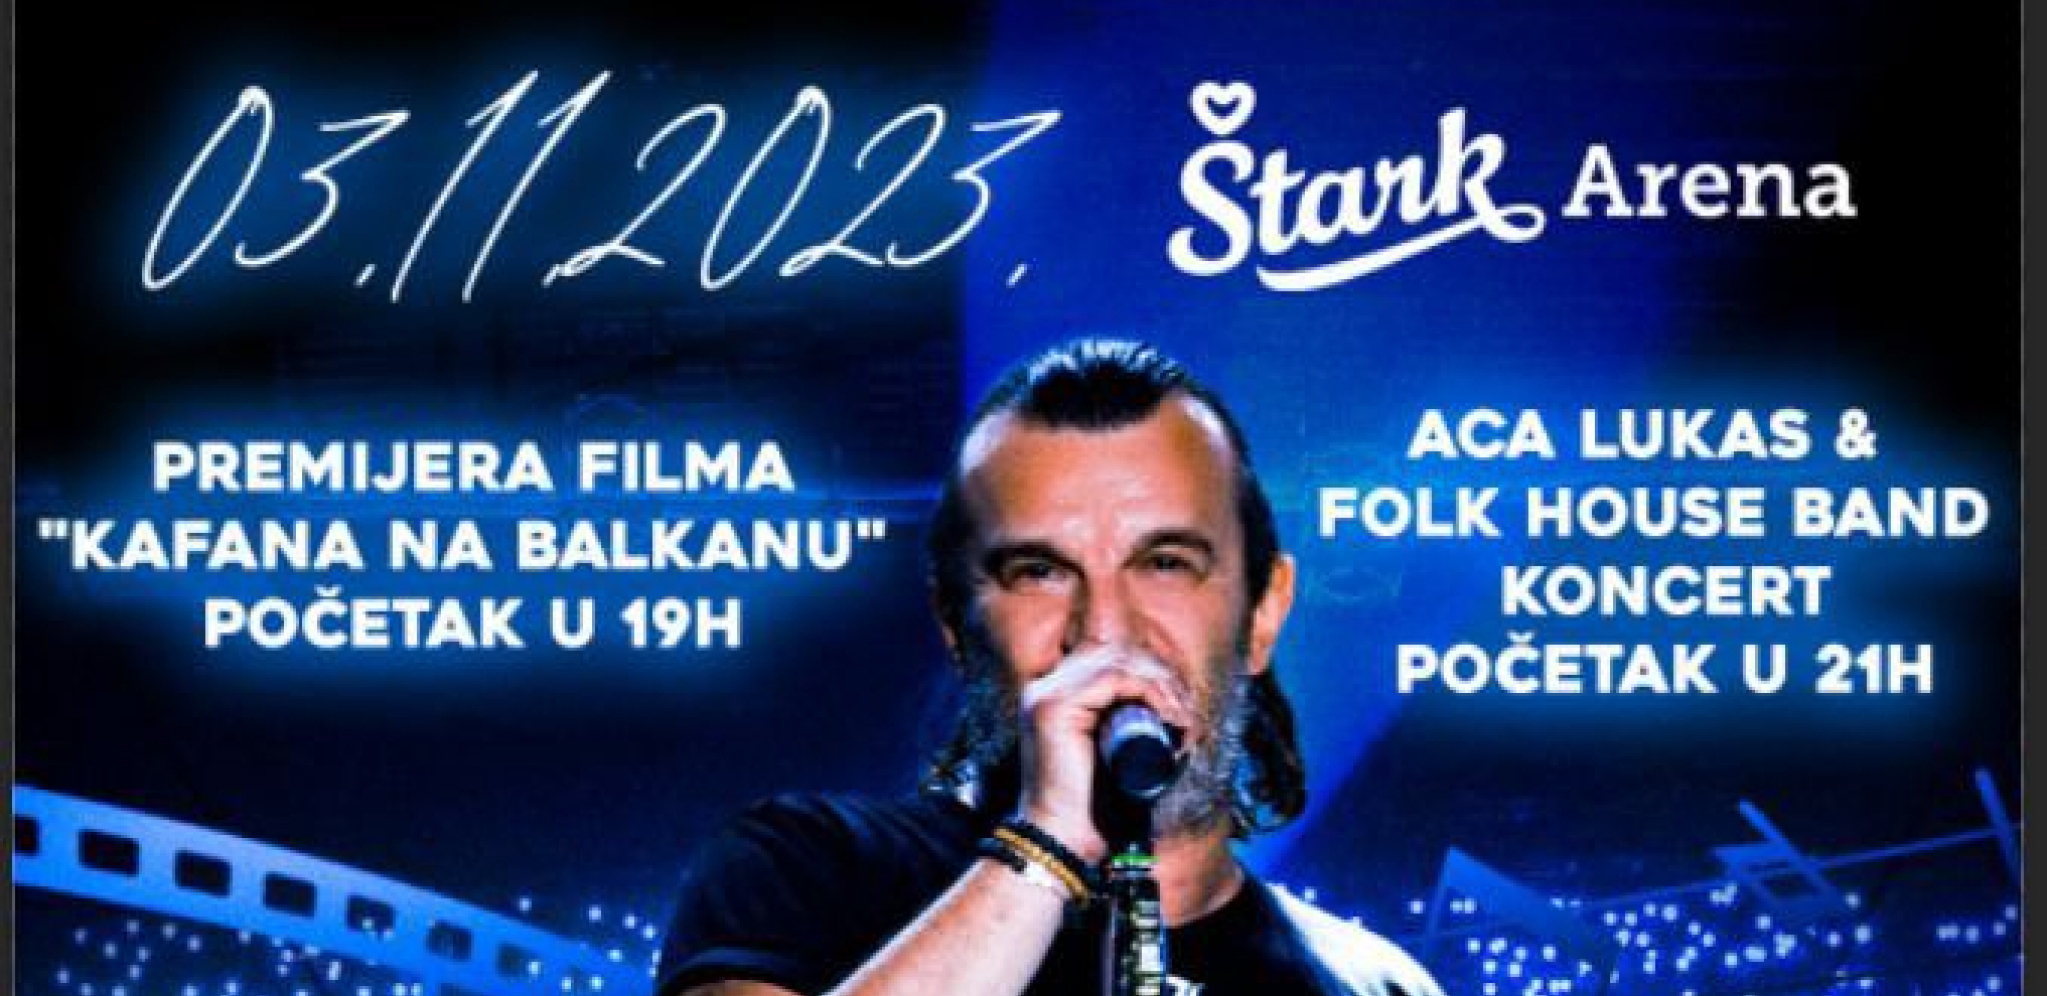 PUŠTENE KARTE U PRODAJU: Obezbedite sebi mesto na vreme za premijeru filma "Kafana na Balkanu" i koncert Ace Lukasa!